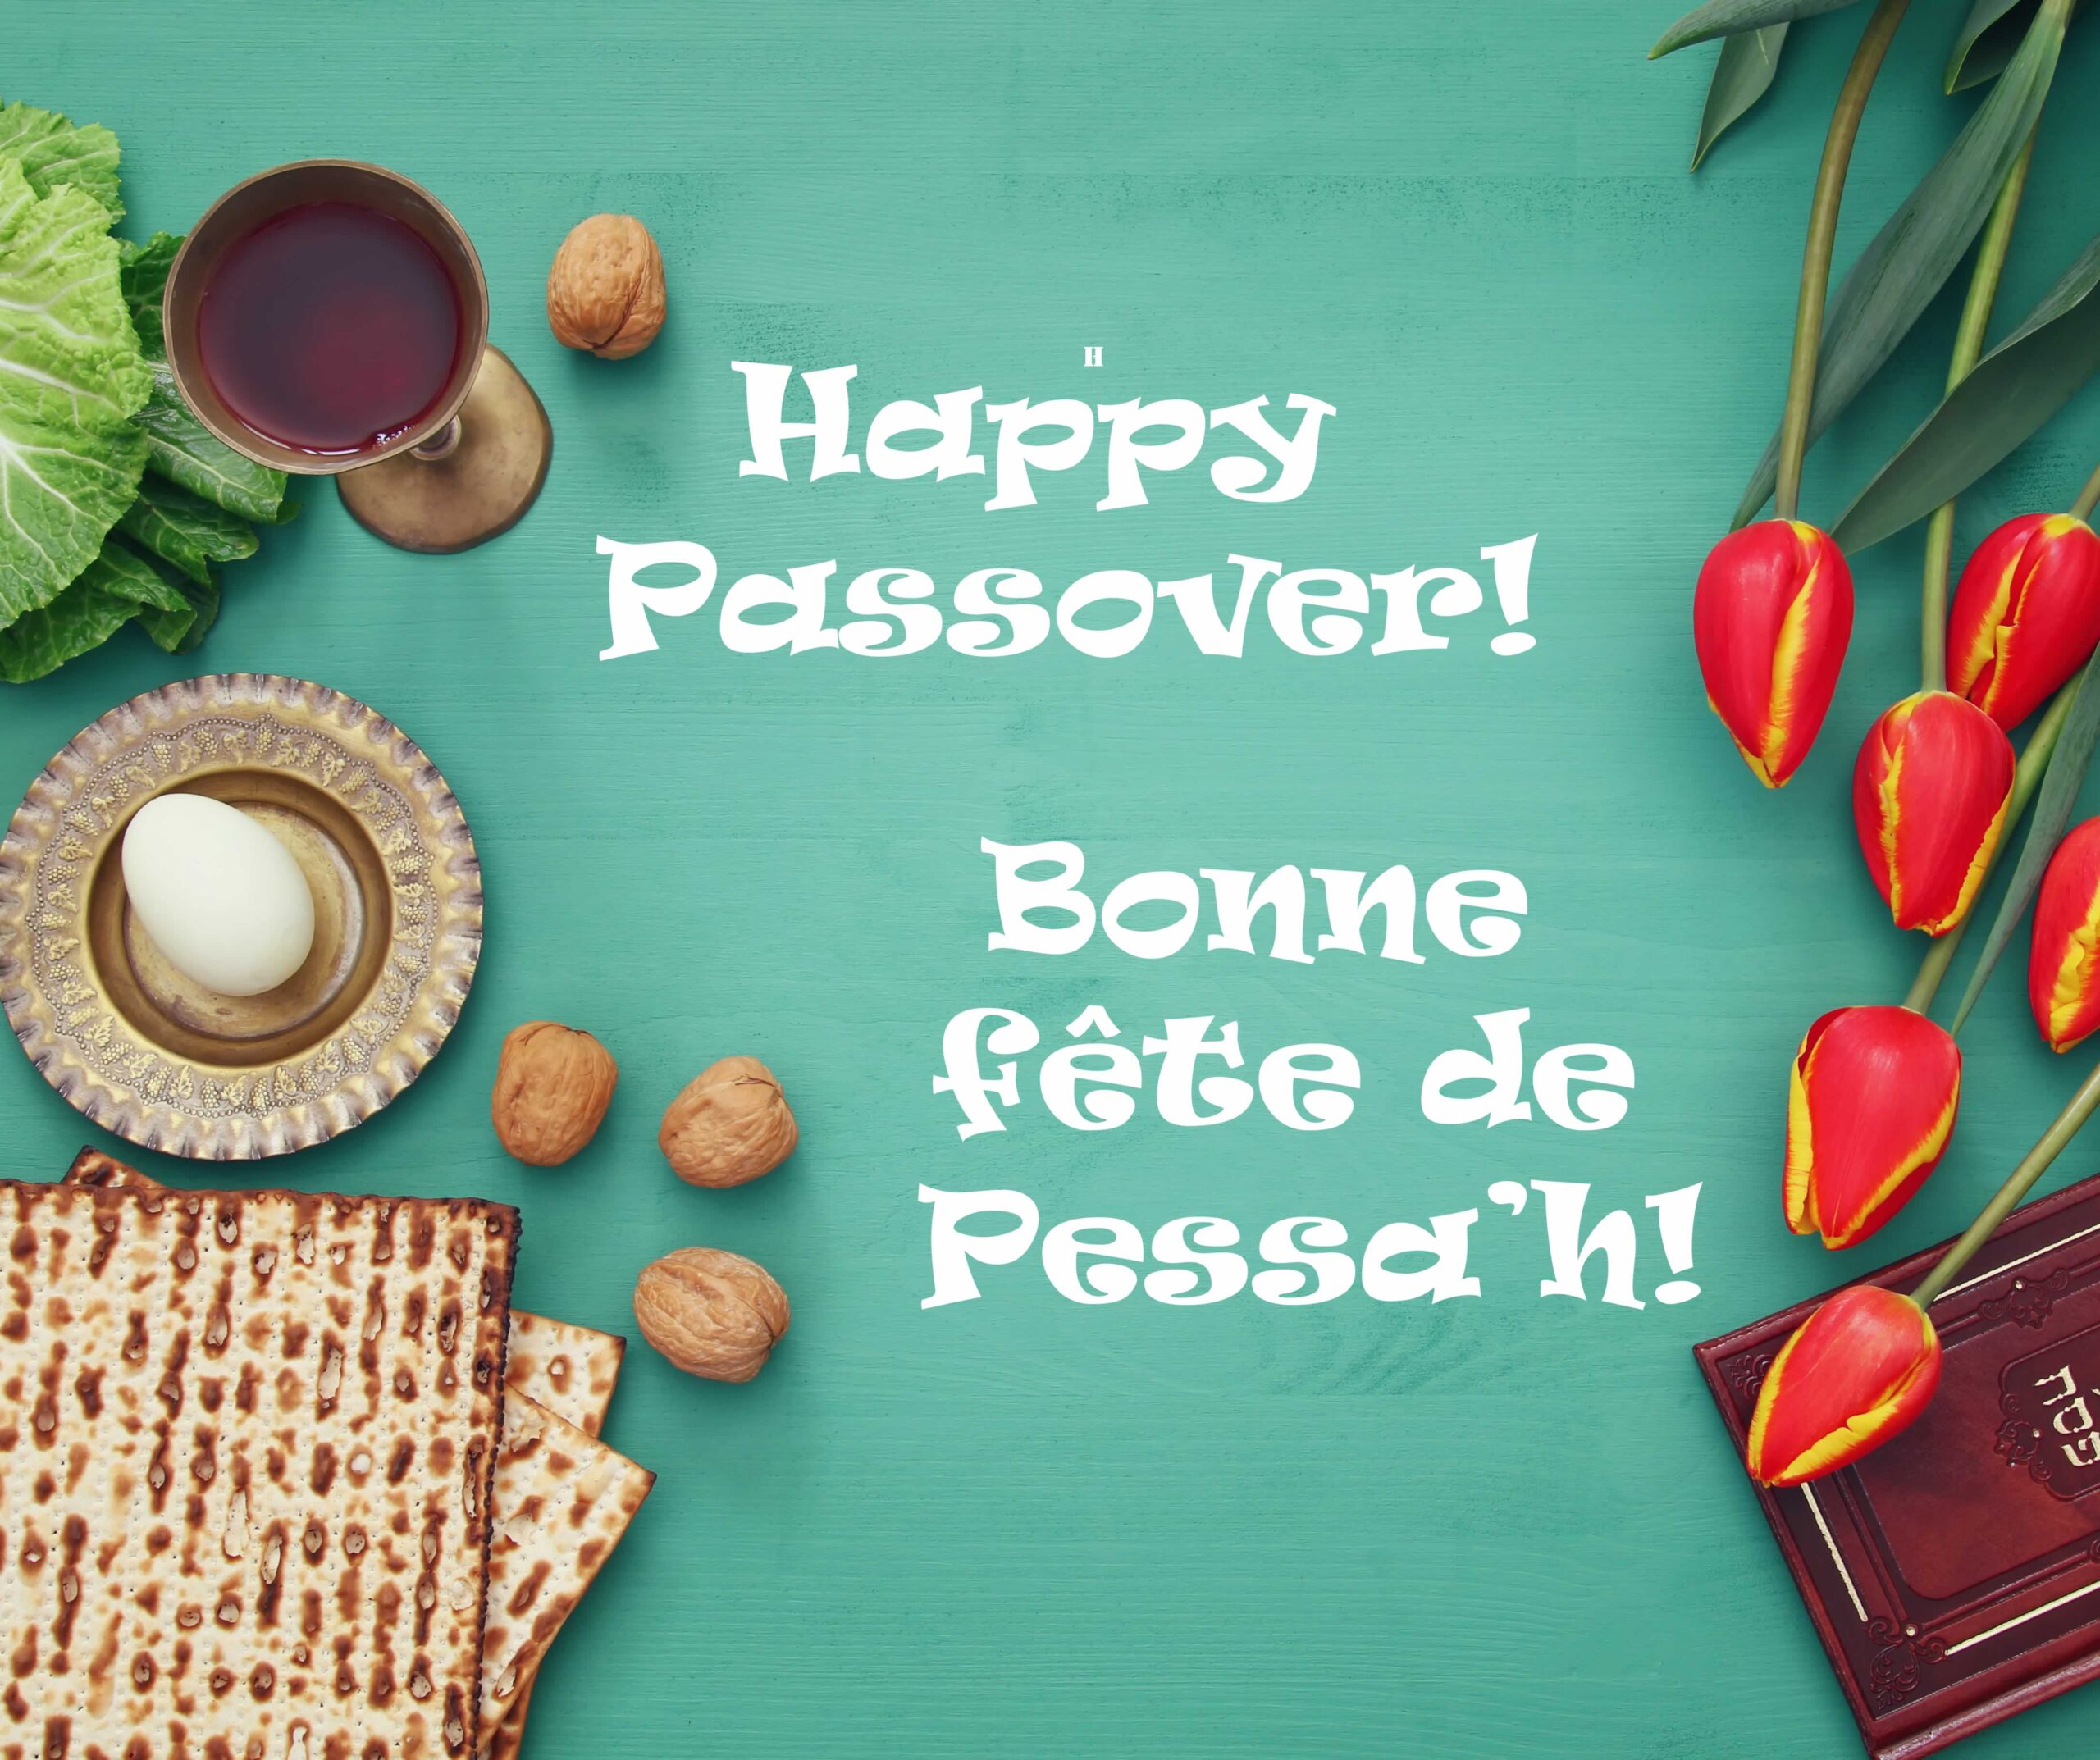 Happy Passover! Bonne fete de Pessa'h!